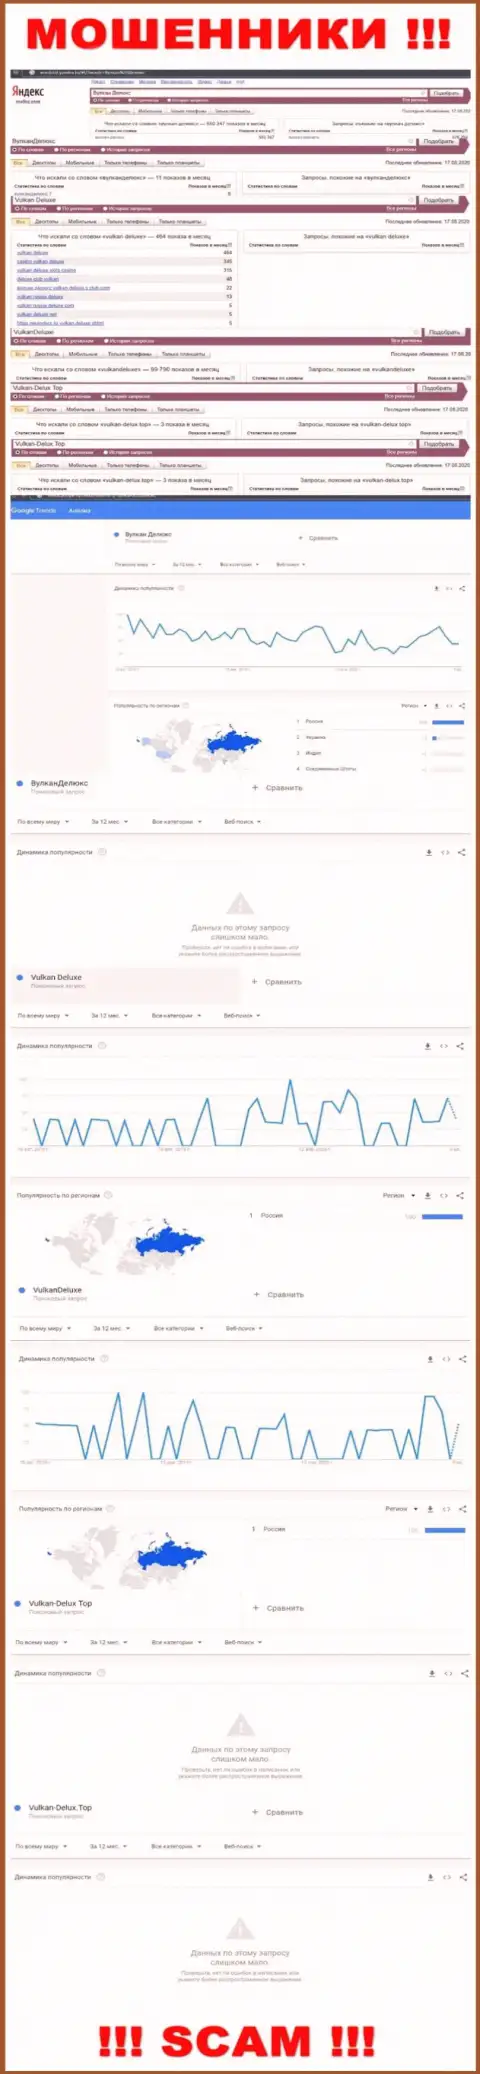 Статистические данные поисковых запросов по махинаторам Вулкан-Делюкс Топ во всемирной интернет сети